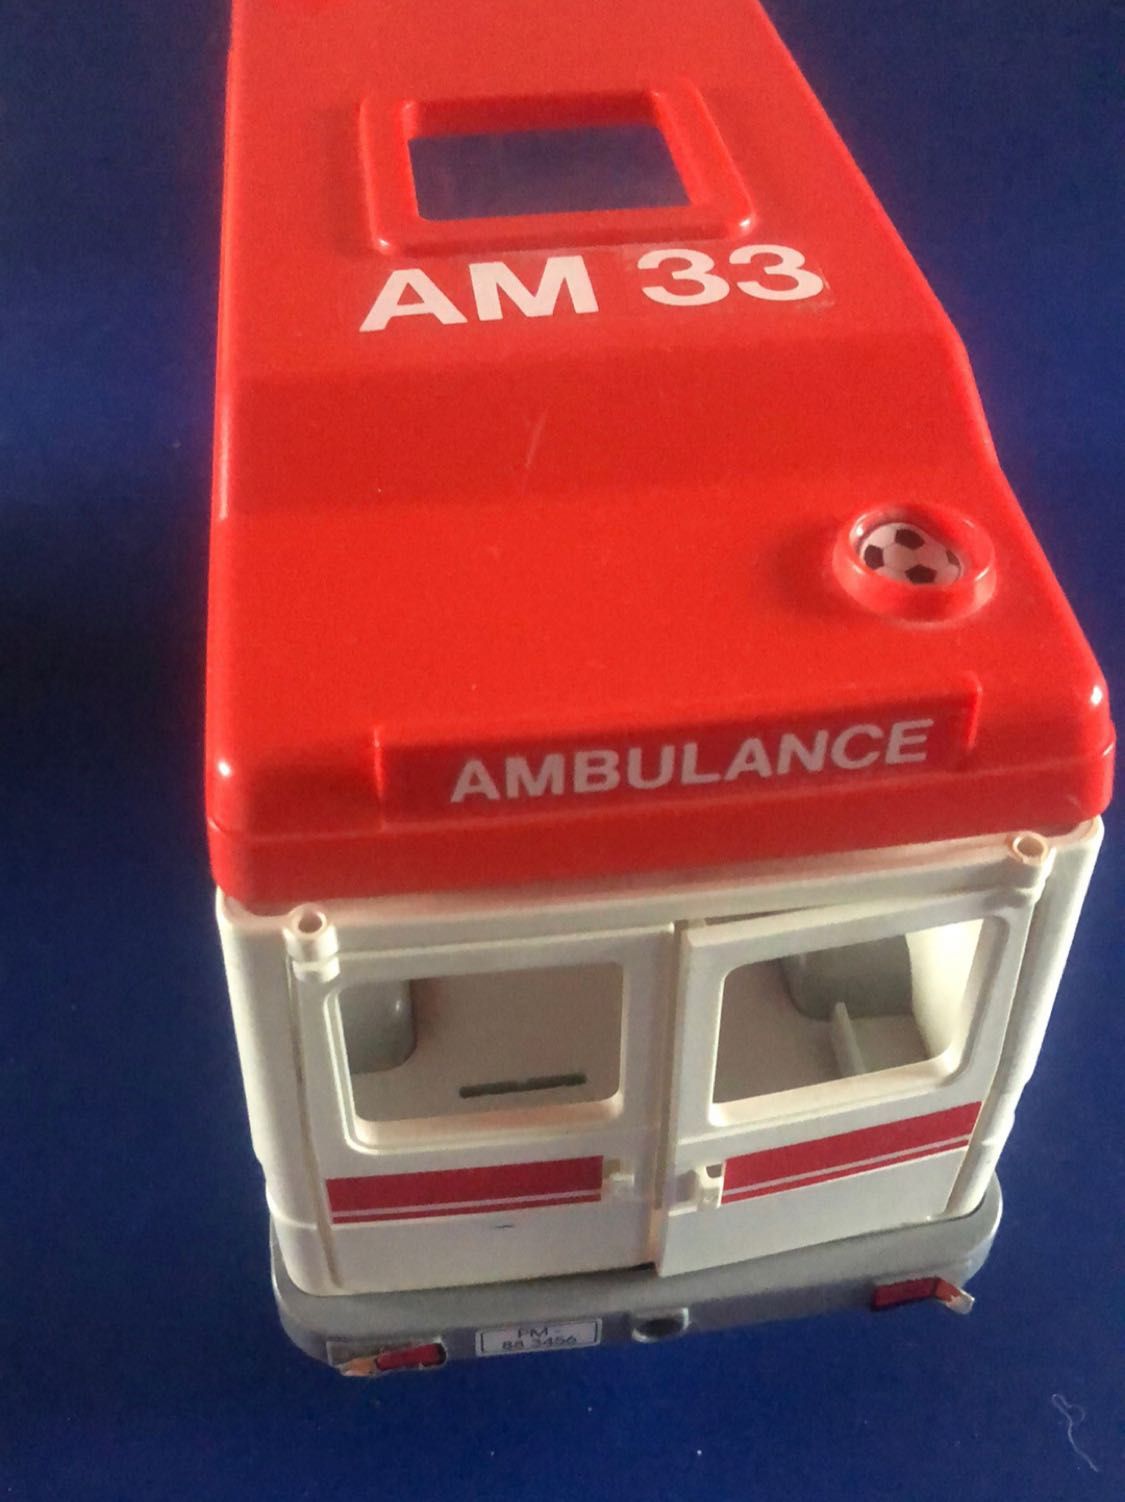 Playmobil ambulance